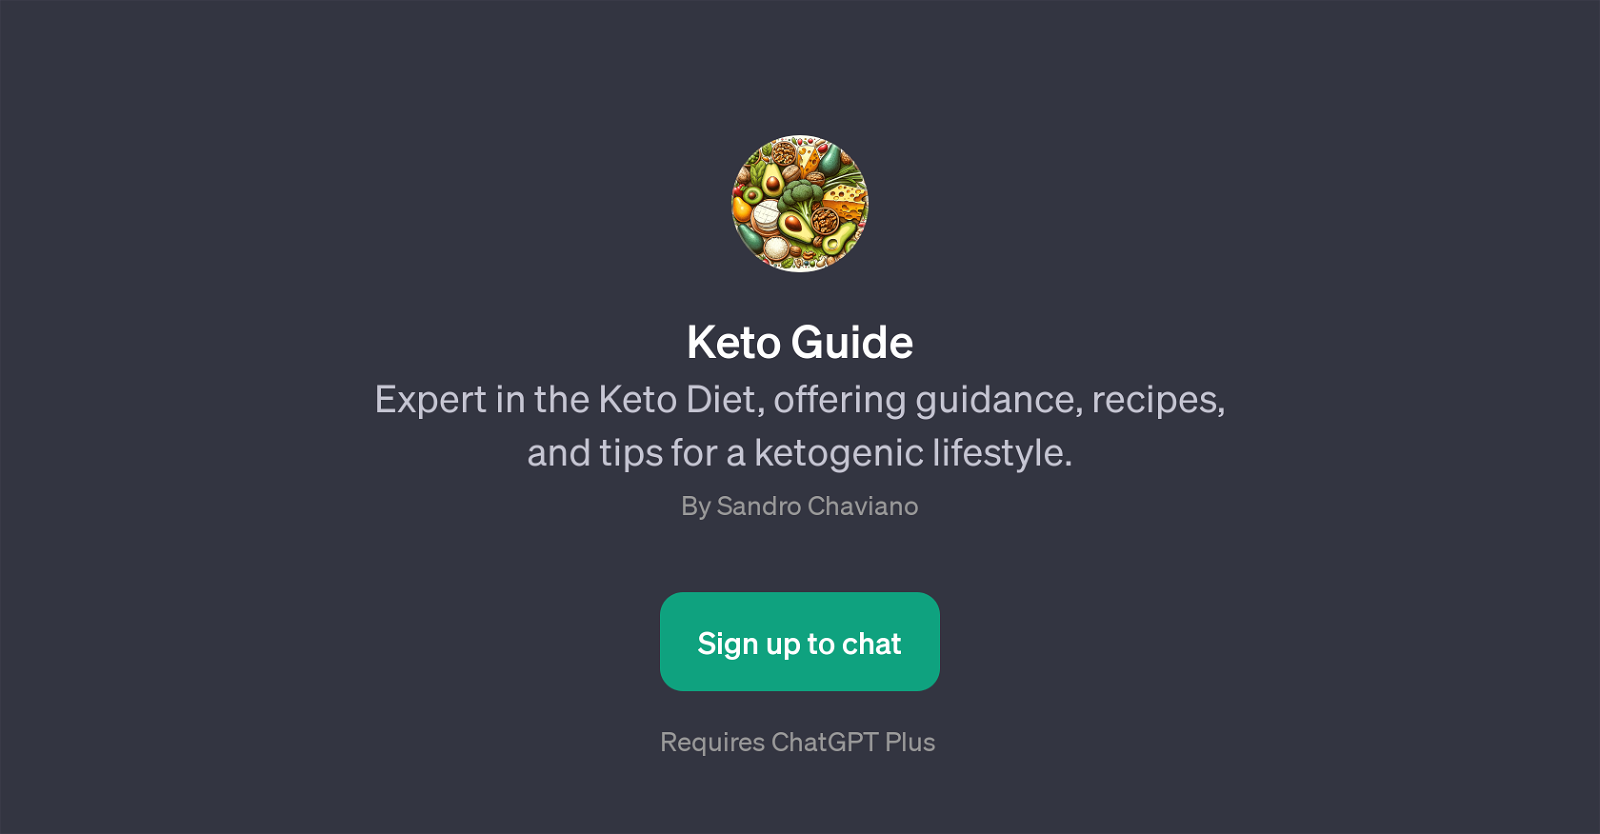 Keto Guide website